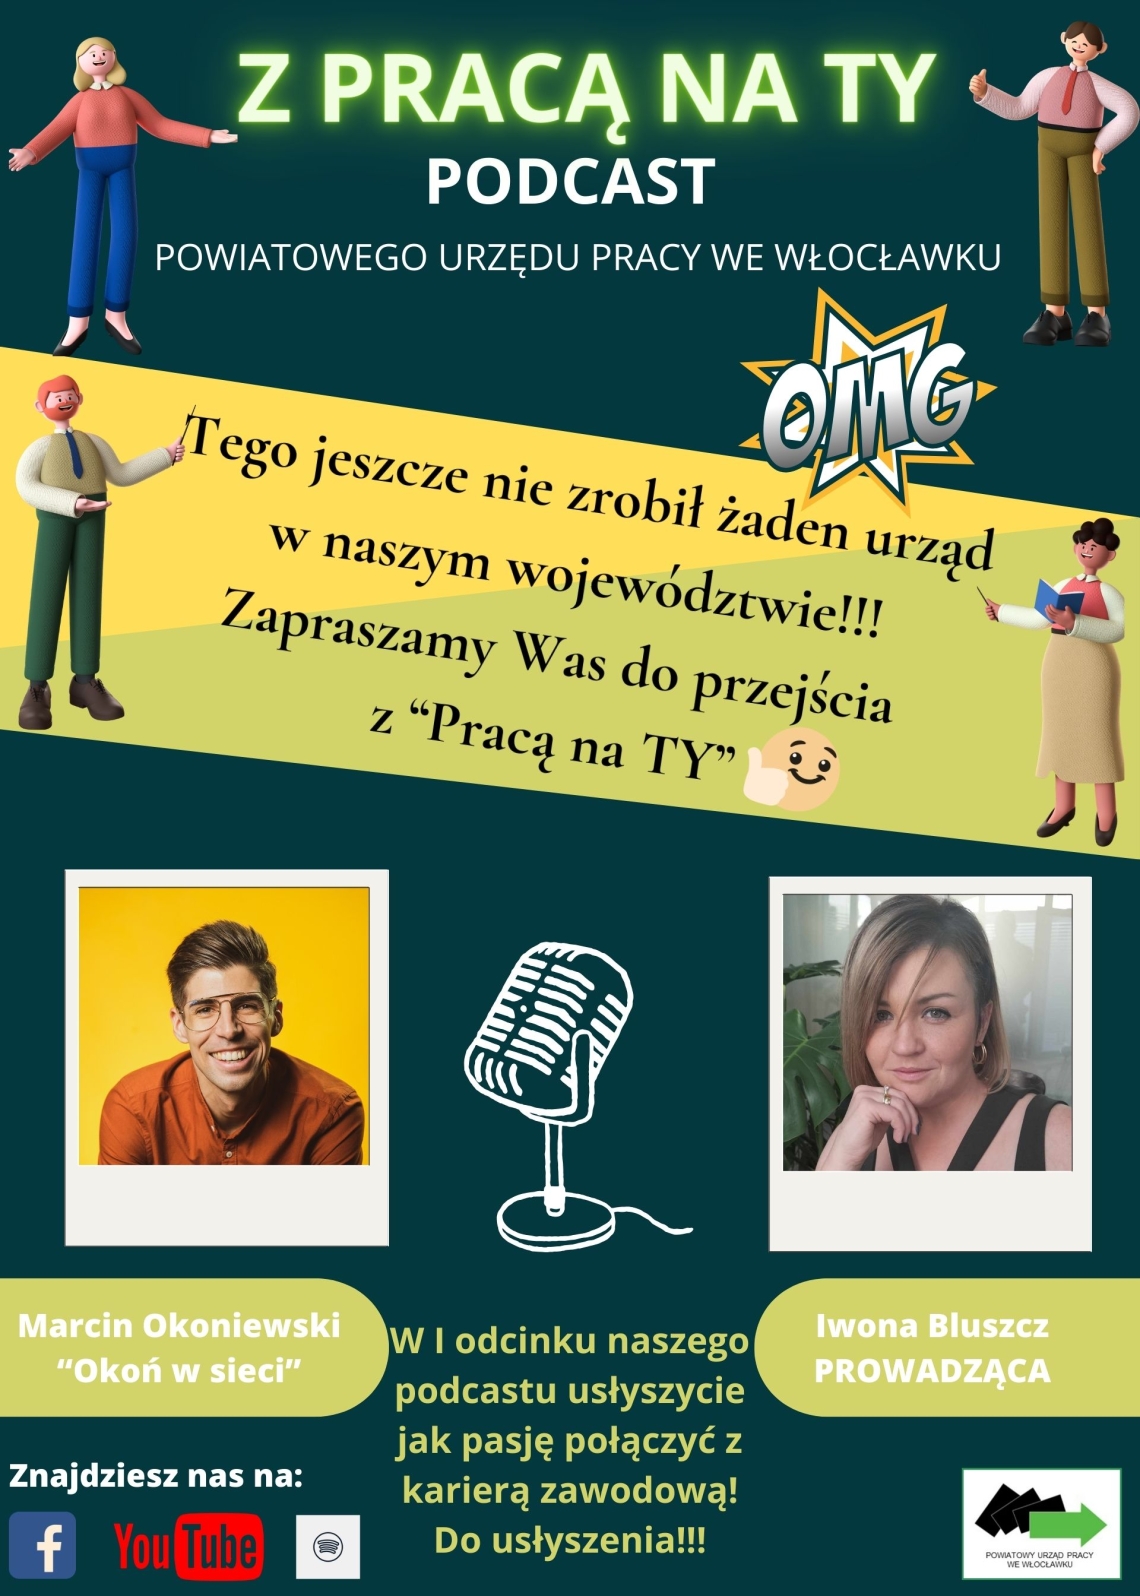 PUP poleca - pierwszy odcinek podcastu "Z pracą na Ty"! 